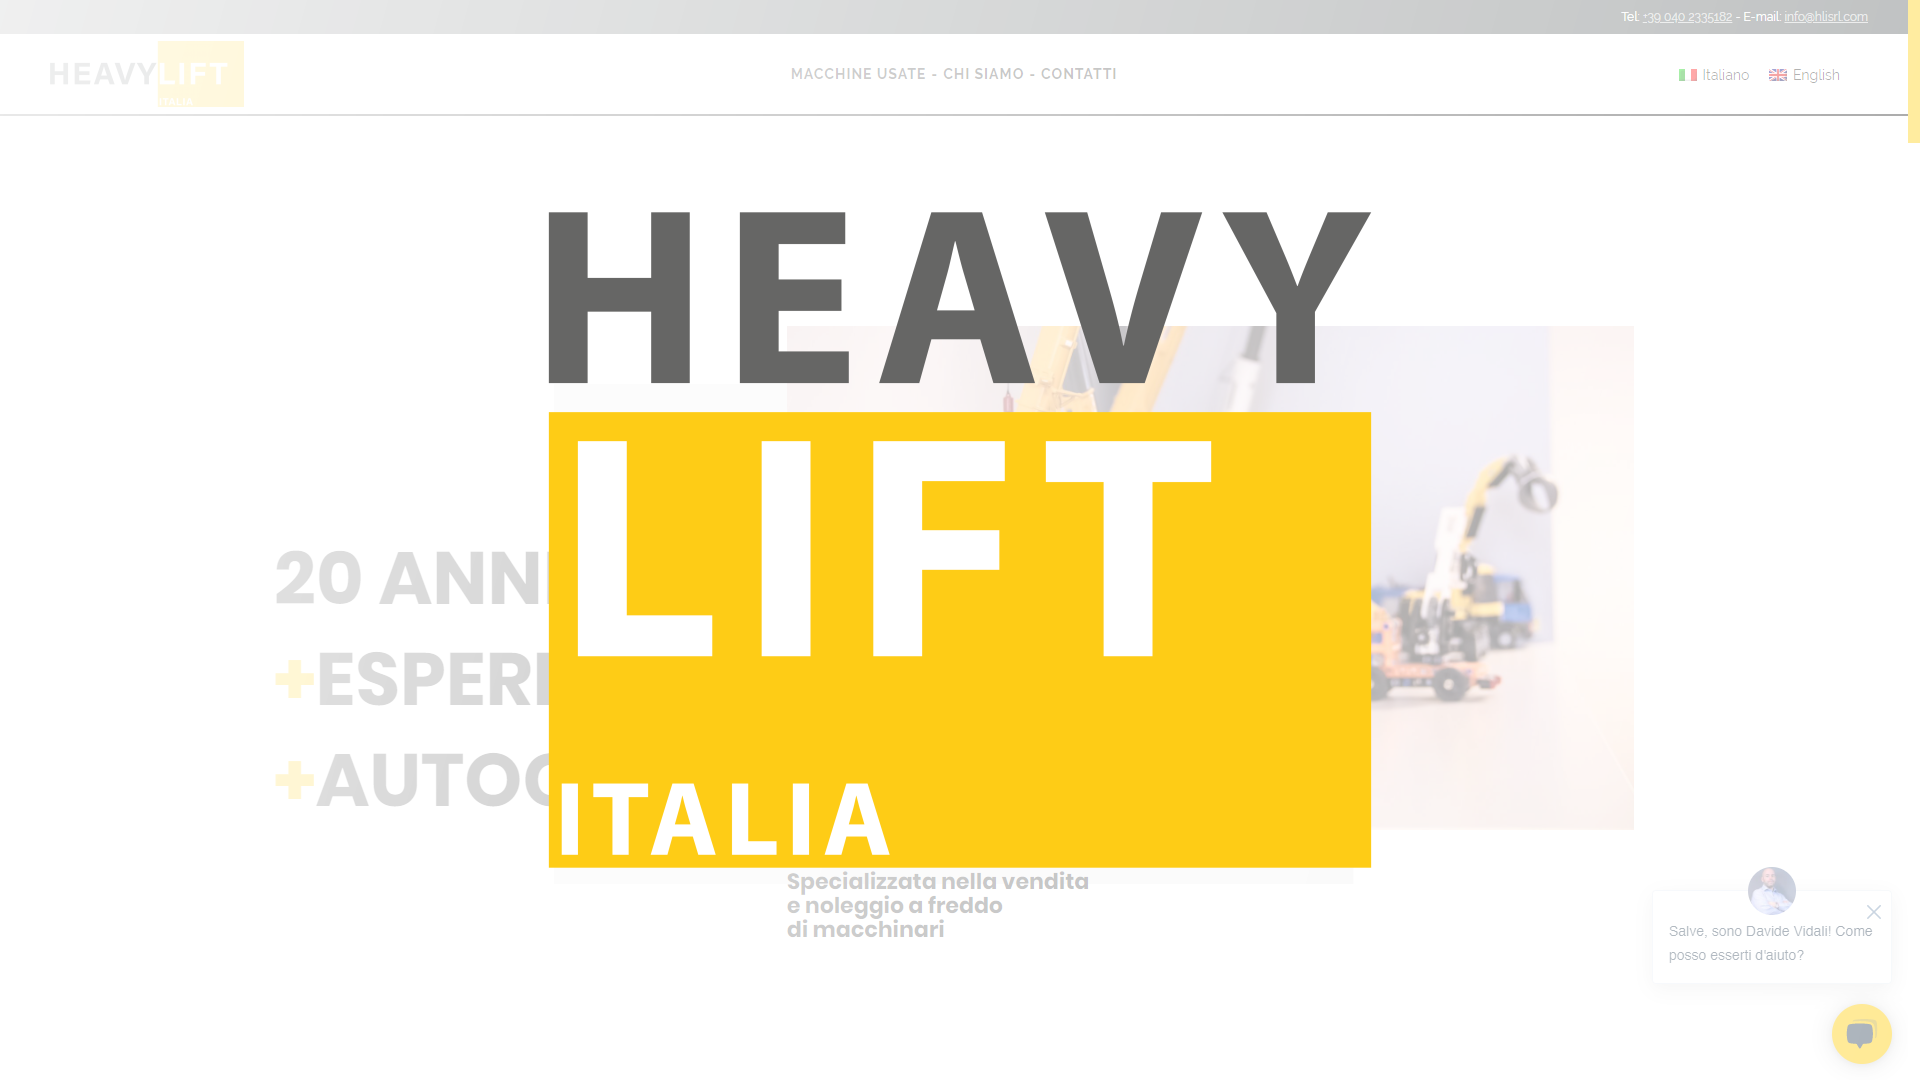 Heavy Lift Italia